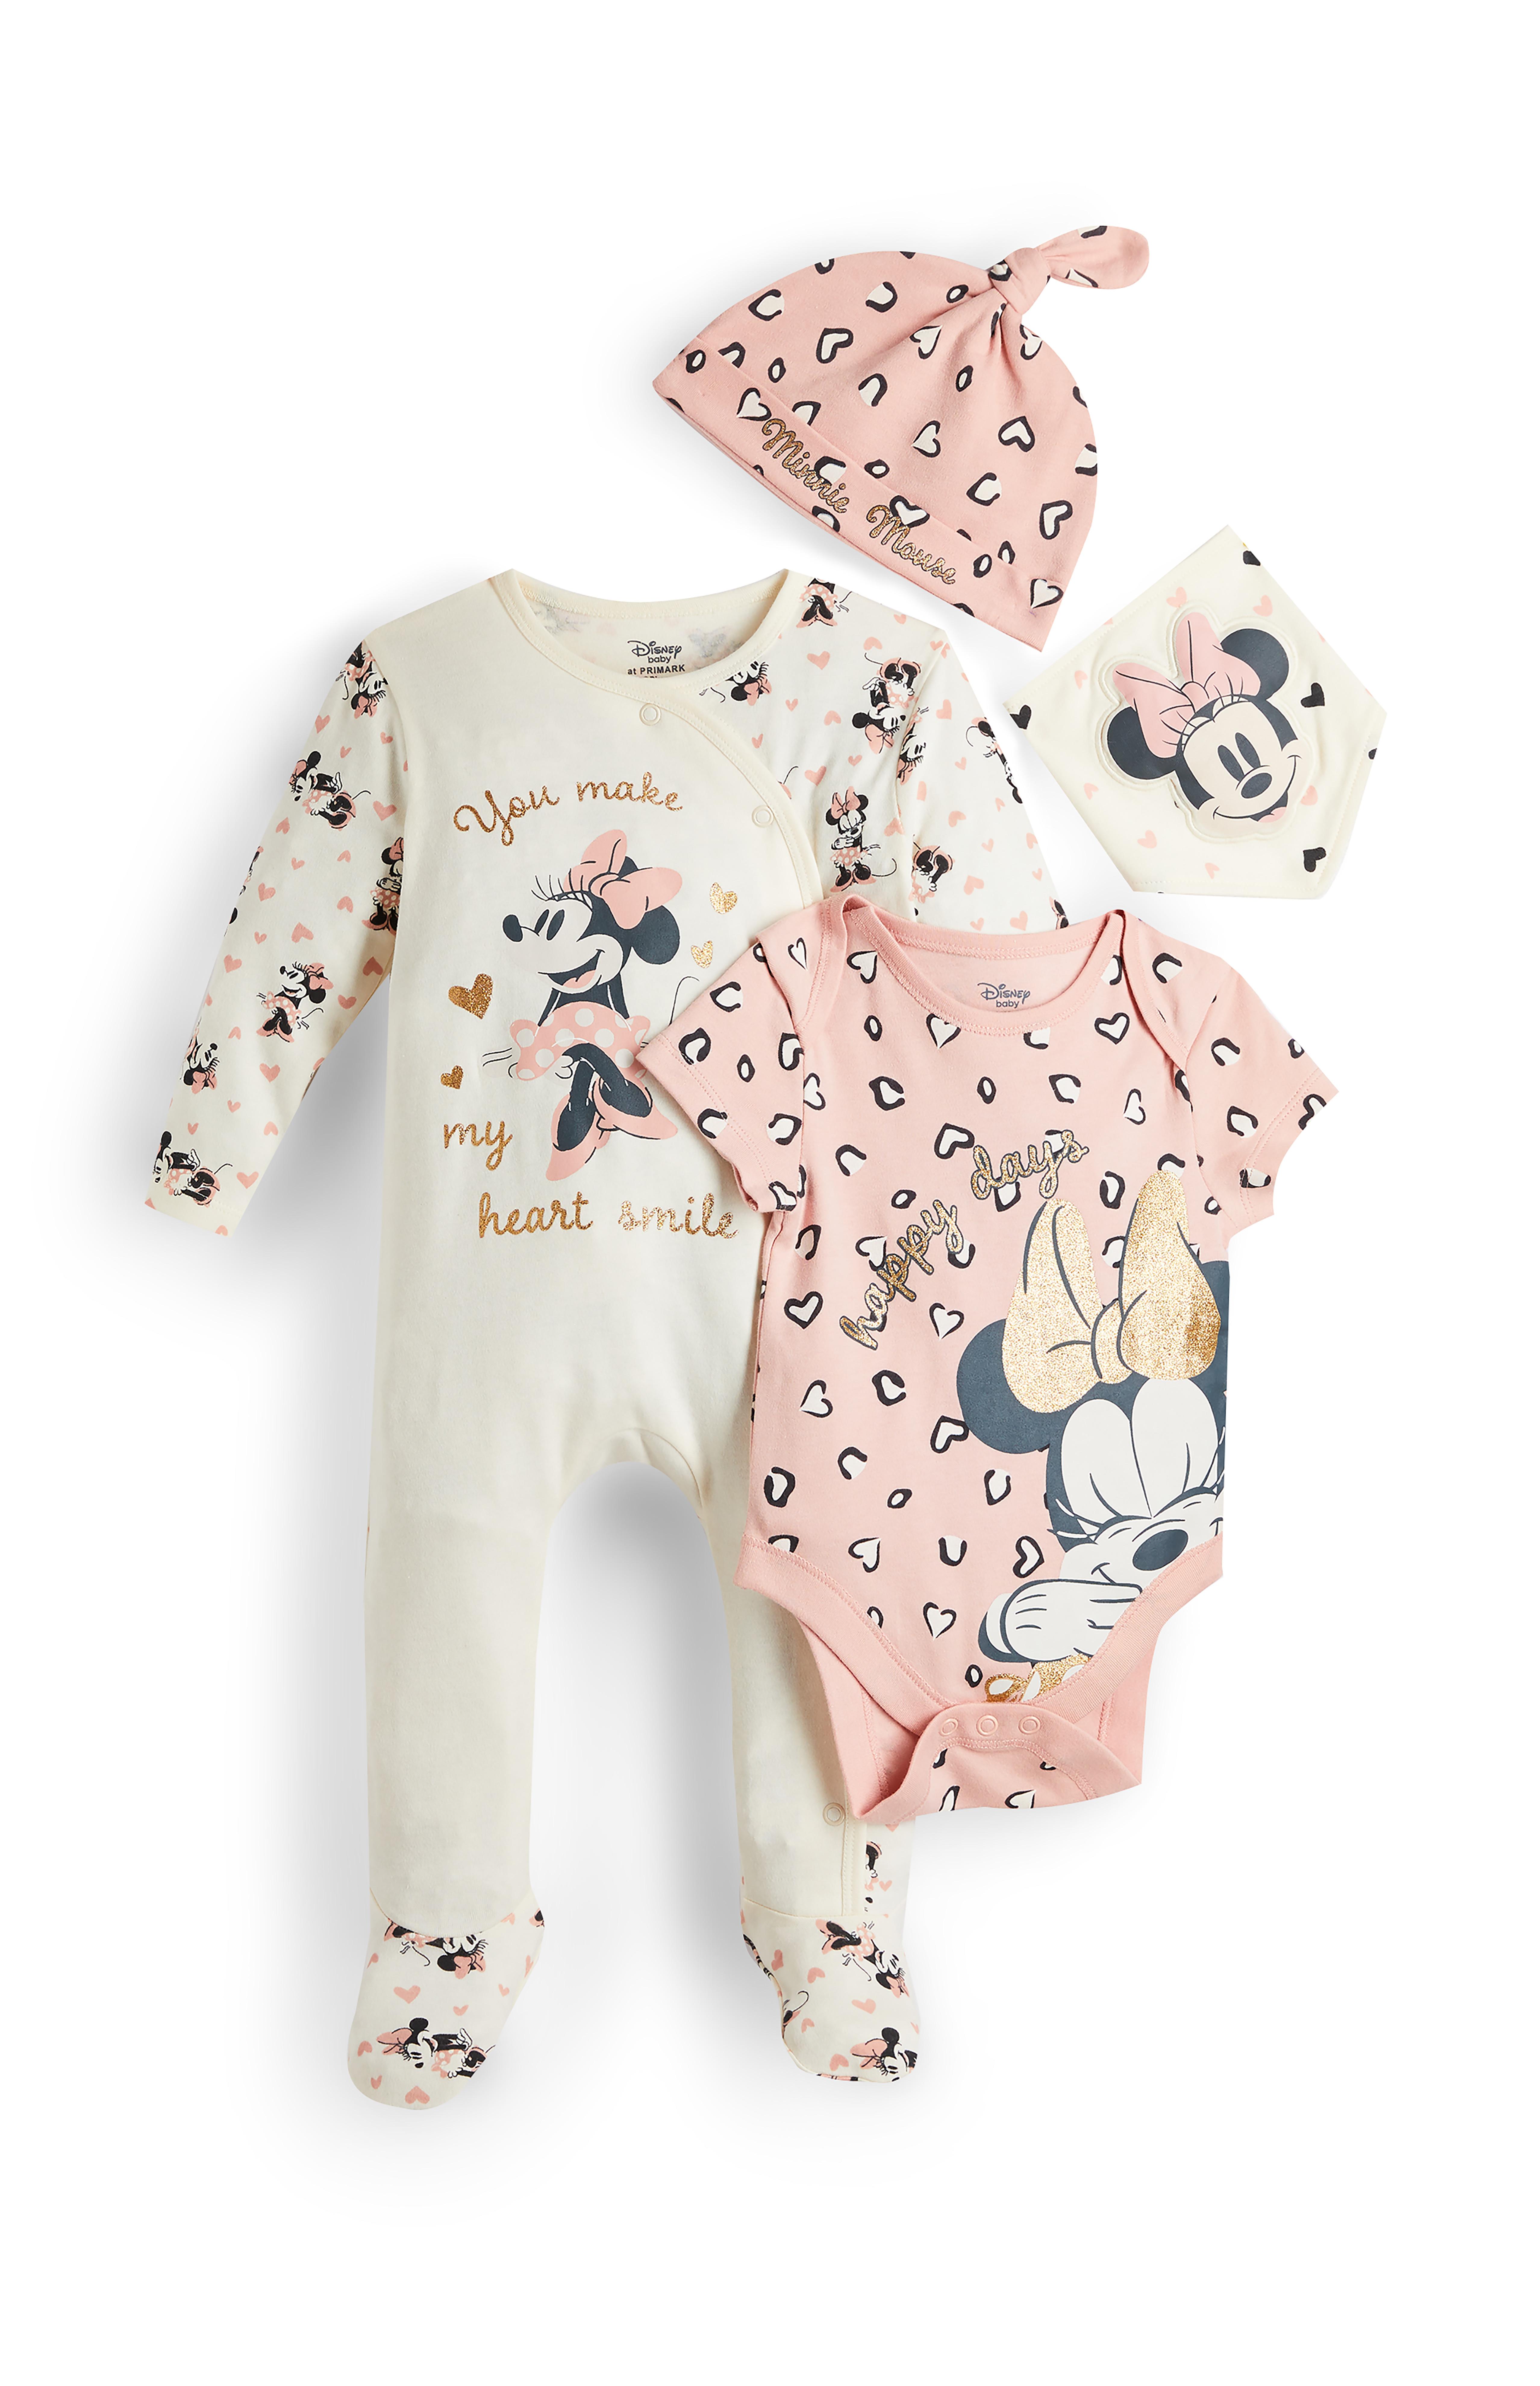 Conjunto Rosa De 4 Piezas De Minnie Mouse De Disney Para Recien Nacida Basicos De Moda Para Bebe Moda Para Bebes Y Recien Nacidos Ropa Para Ninos Todos